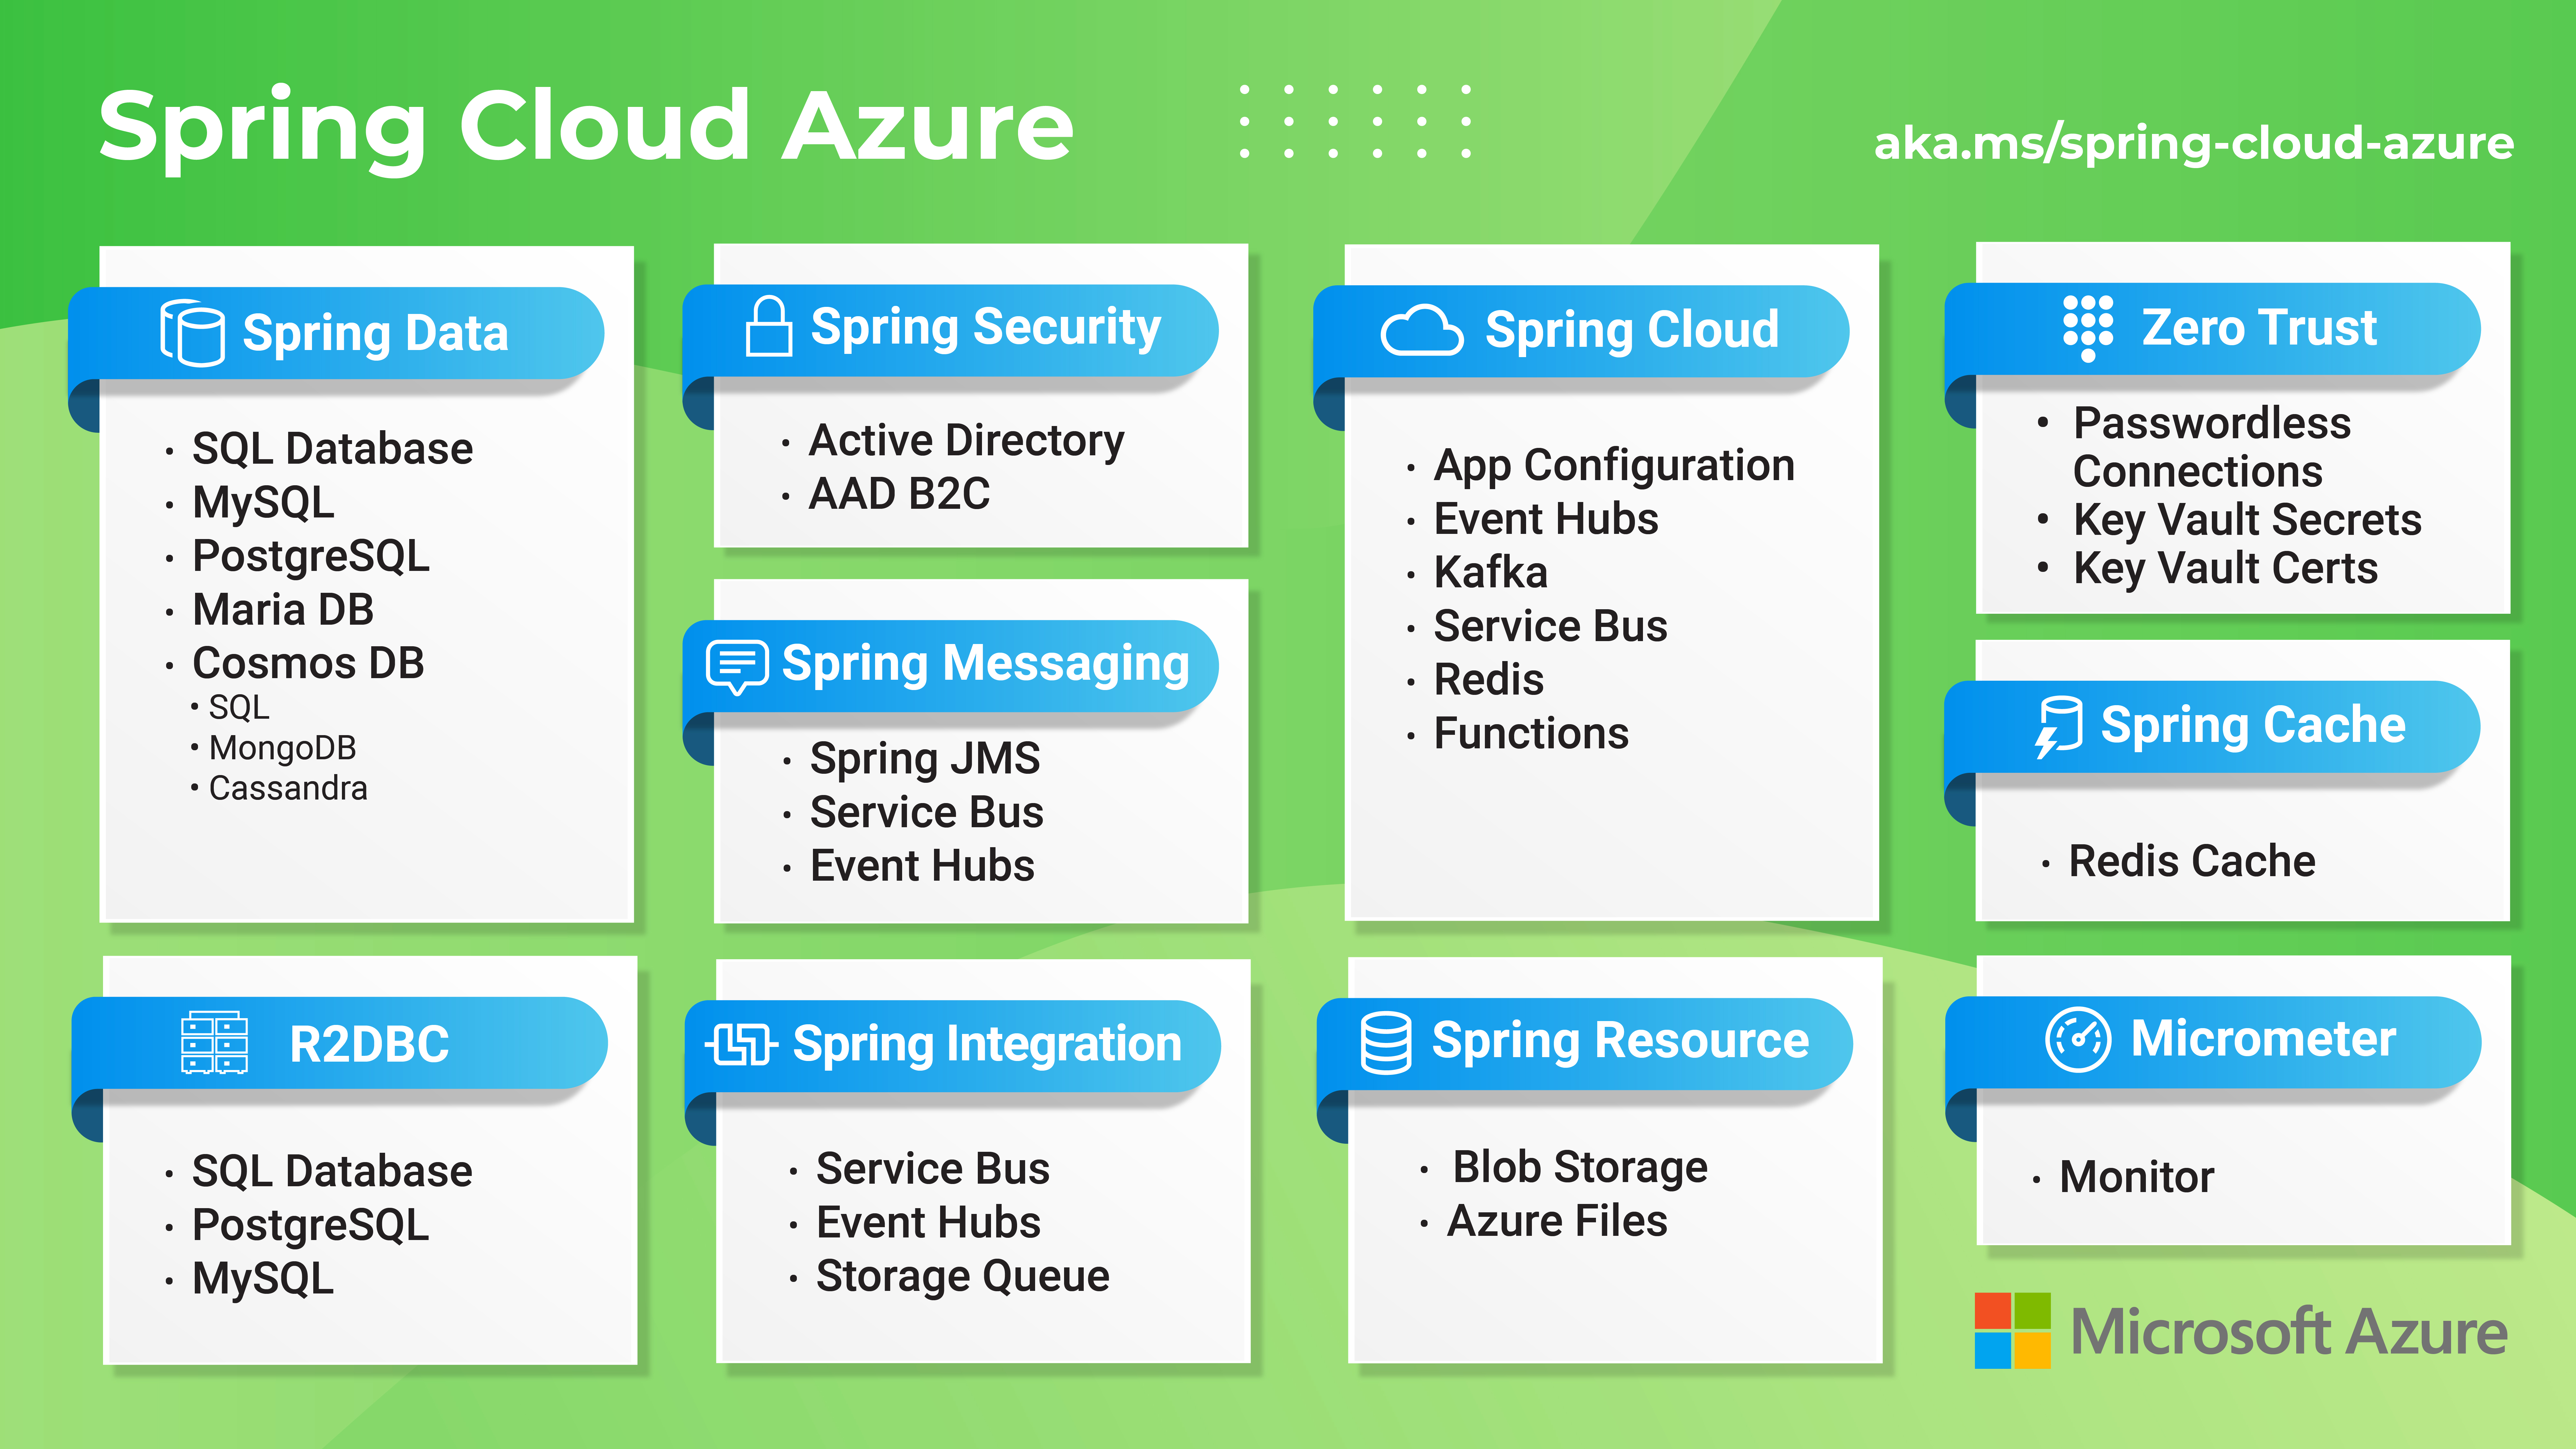 Diagramme fournissant une vue d’ensemble des fonctionnalités d’Azure Spring Cloud.